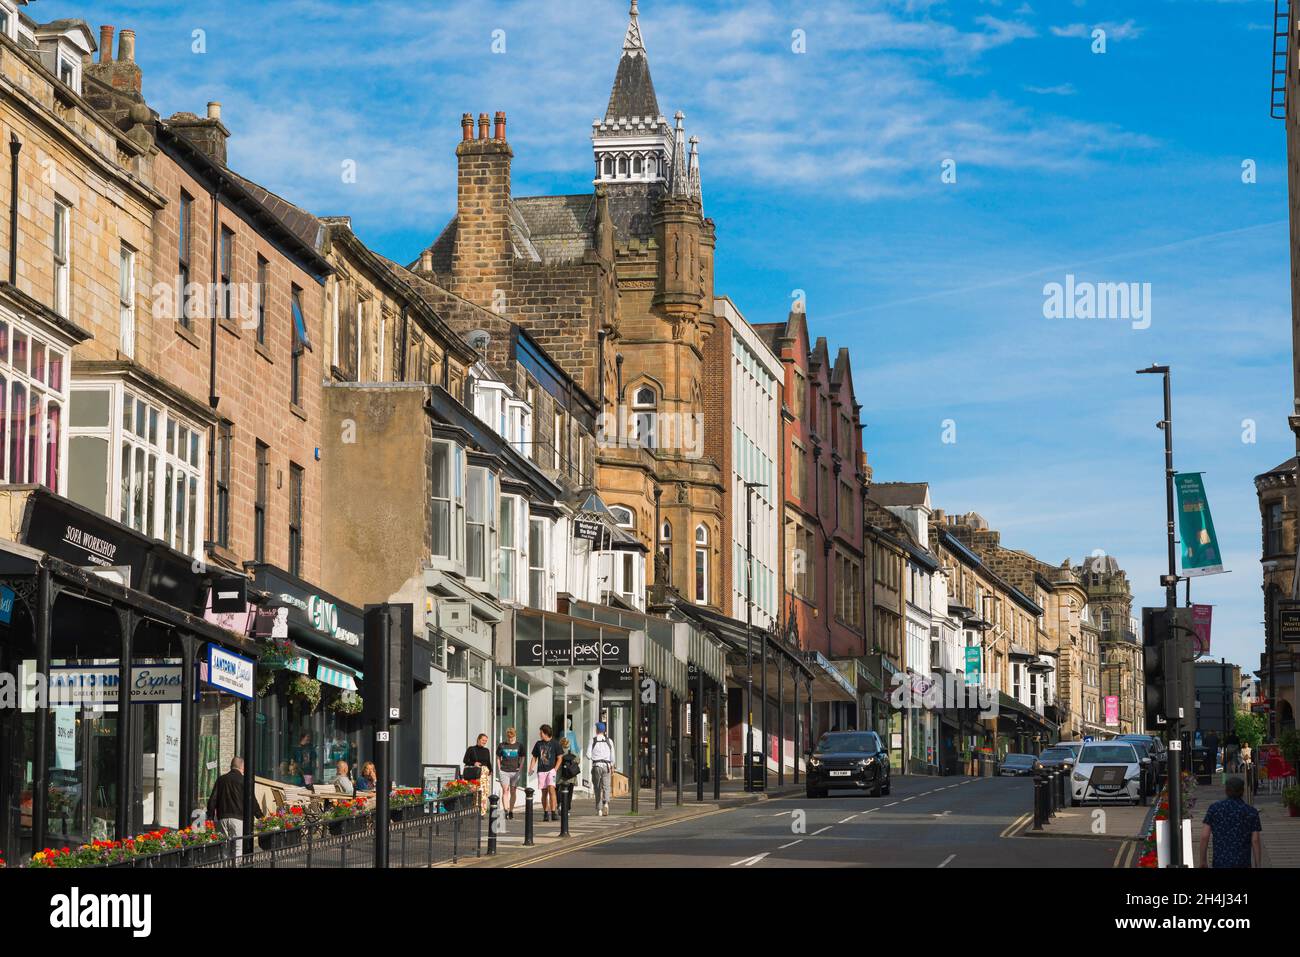 Harrogate, vue sur Parliament Street, la principale artère commerçante qui traverse le centre de Harrogate, North Yorkshire, Angleterre, Royaume-Uni Banque D'Images